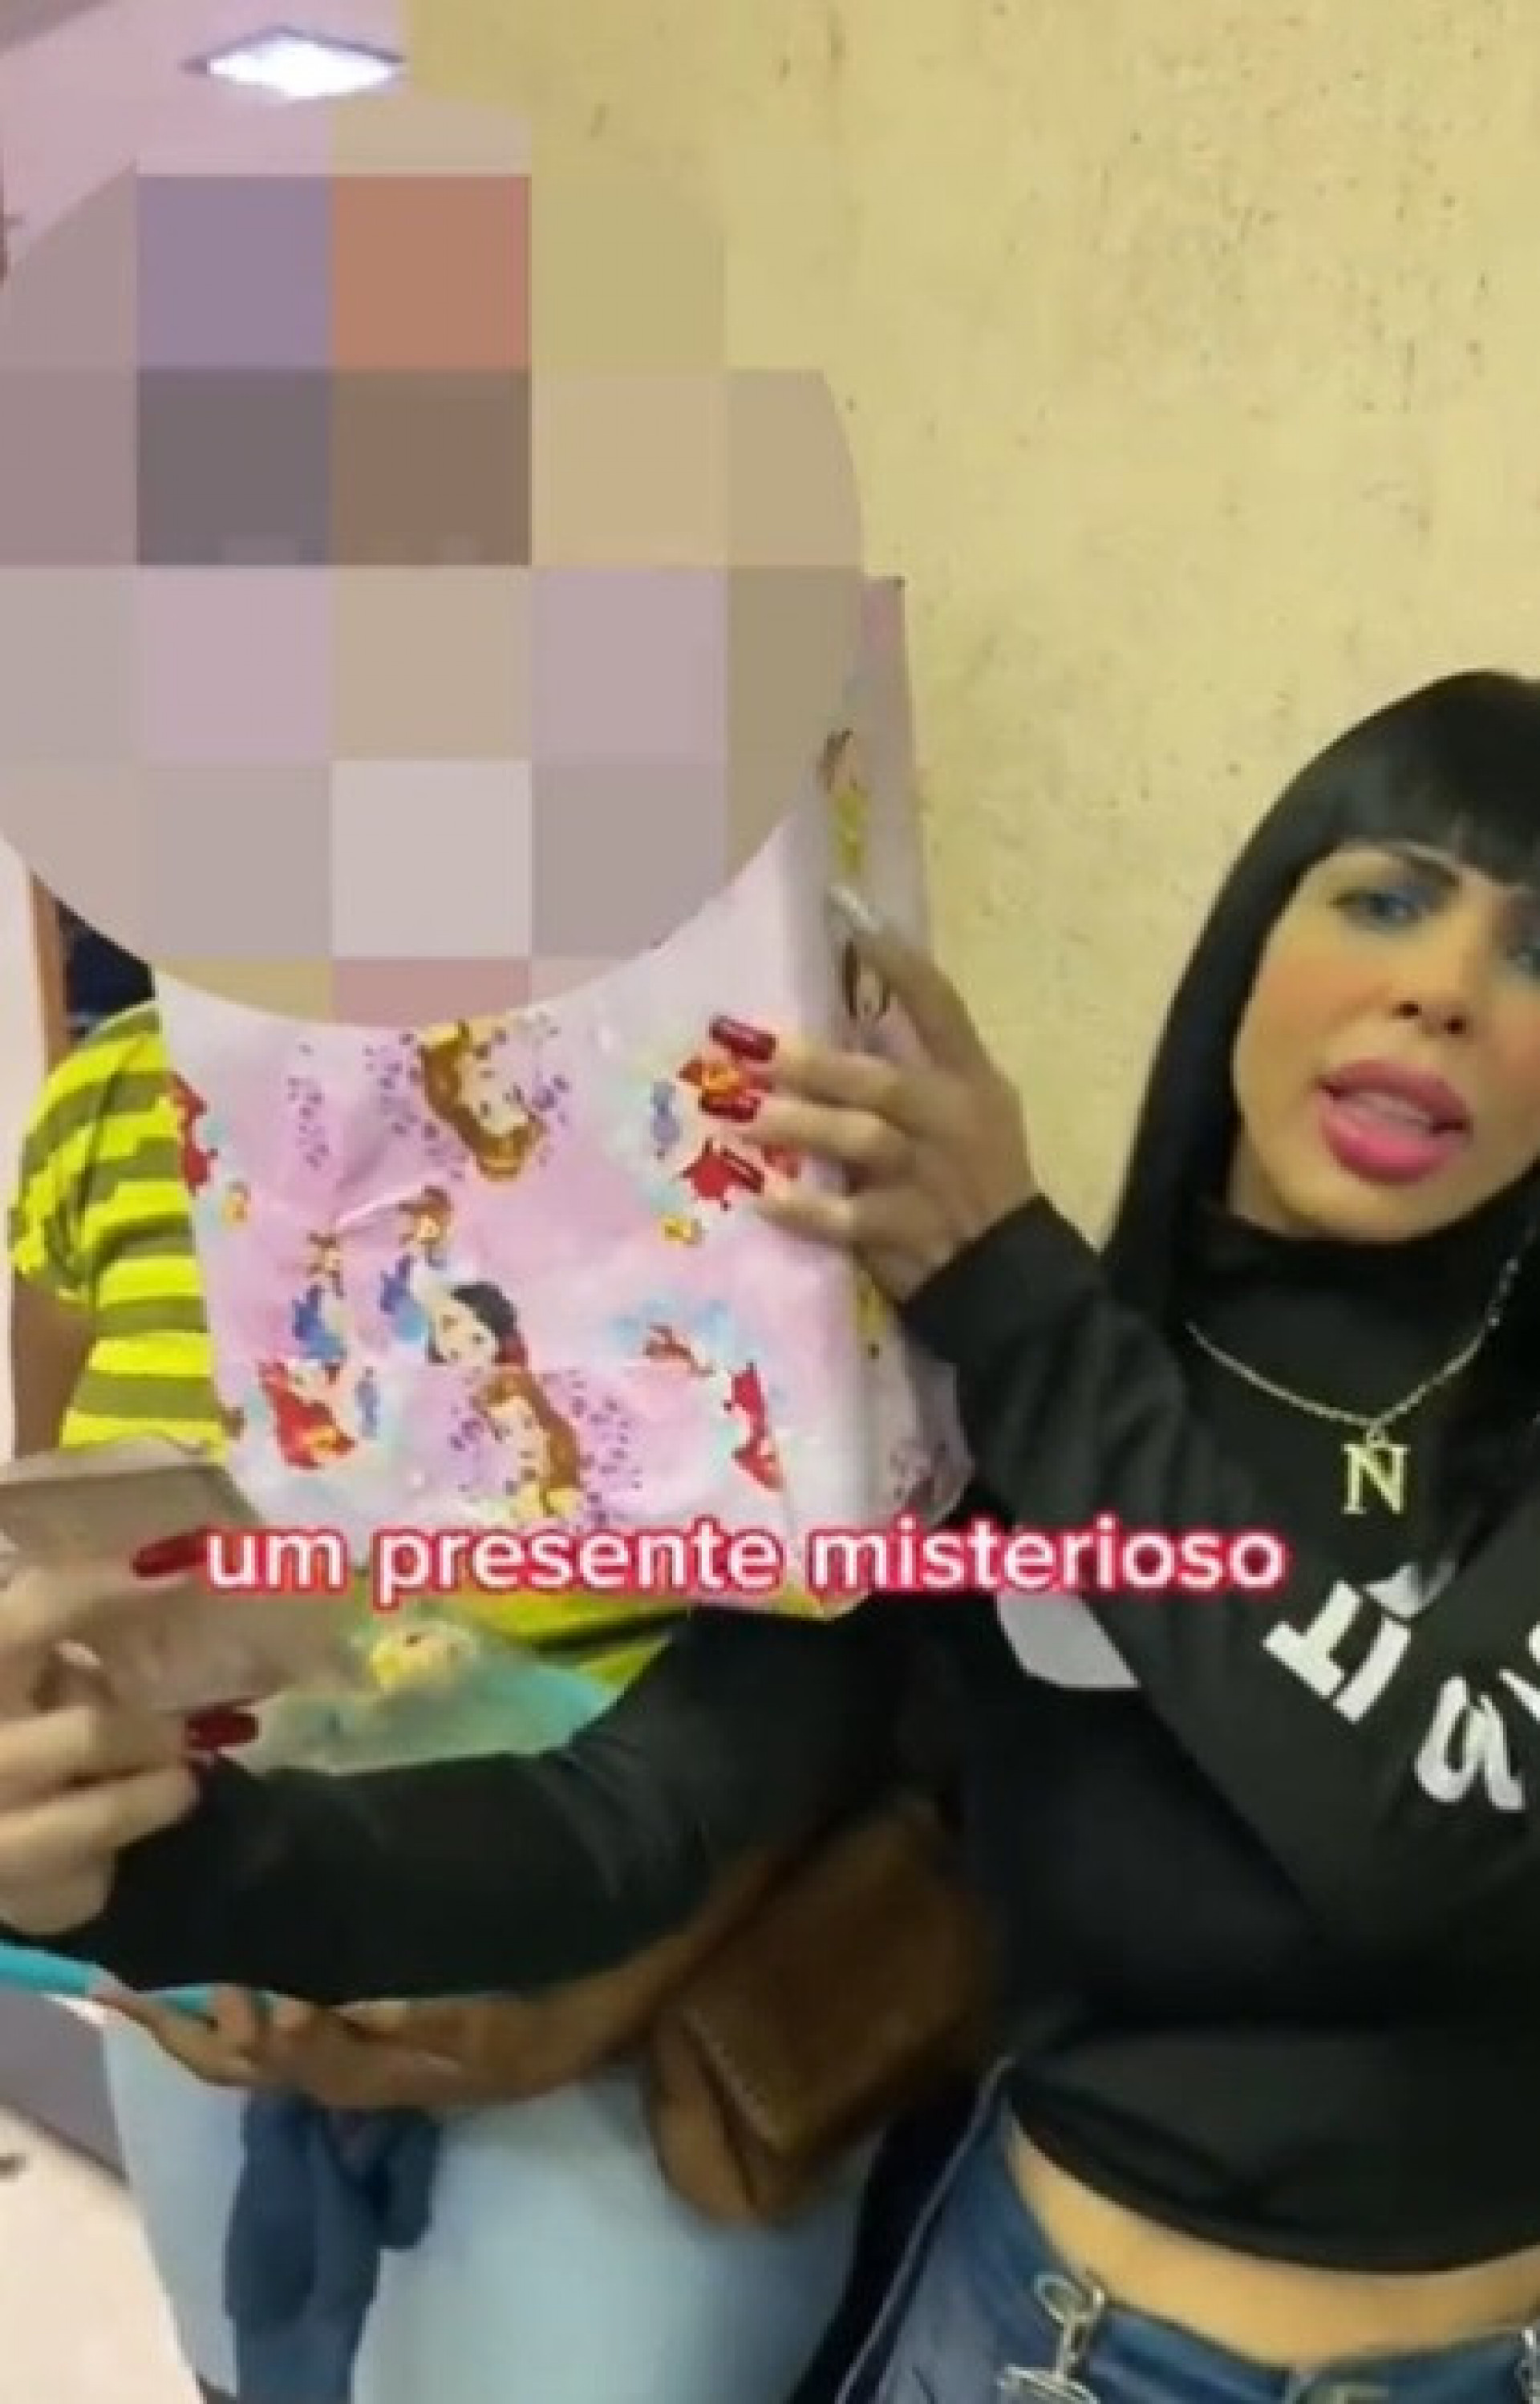 Influenciadora Kérollen Cunha aparece em novo vídeo entregando uma banana amassada dentro de uma carteira para uma mulher negra - Reprodução